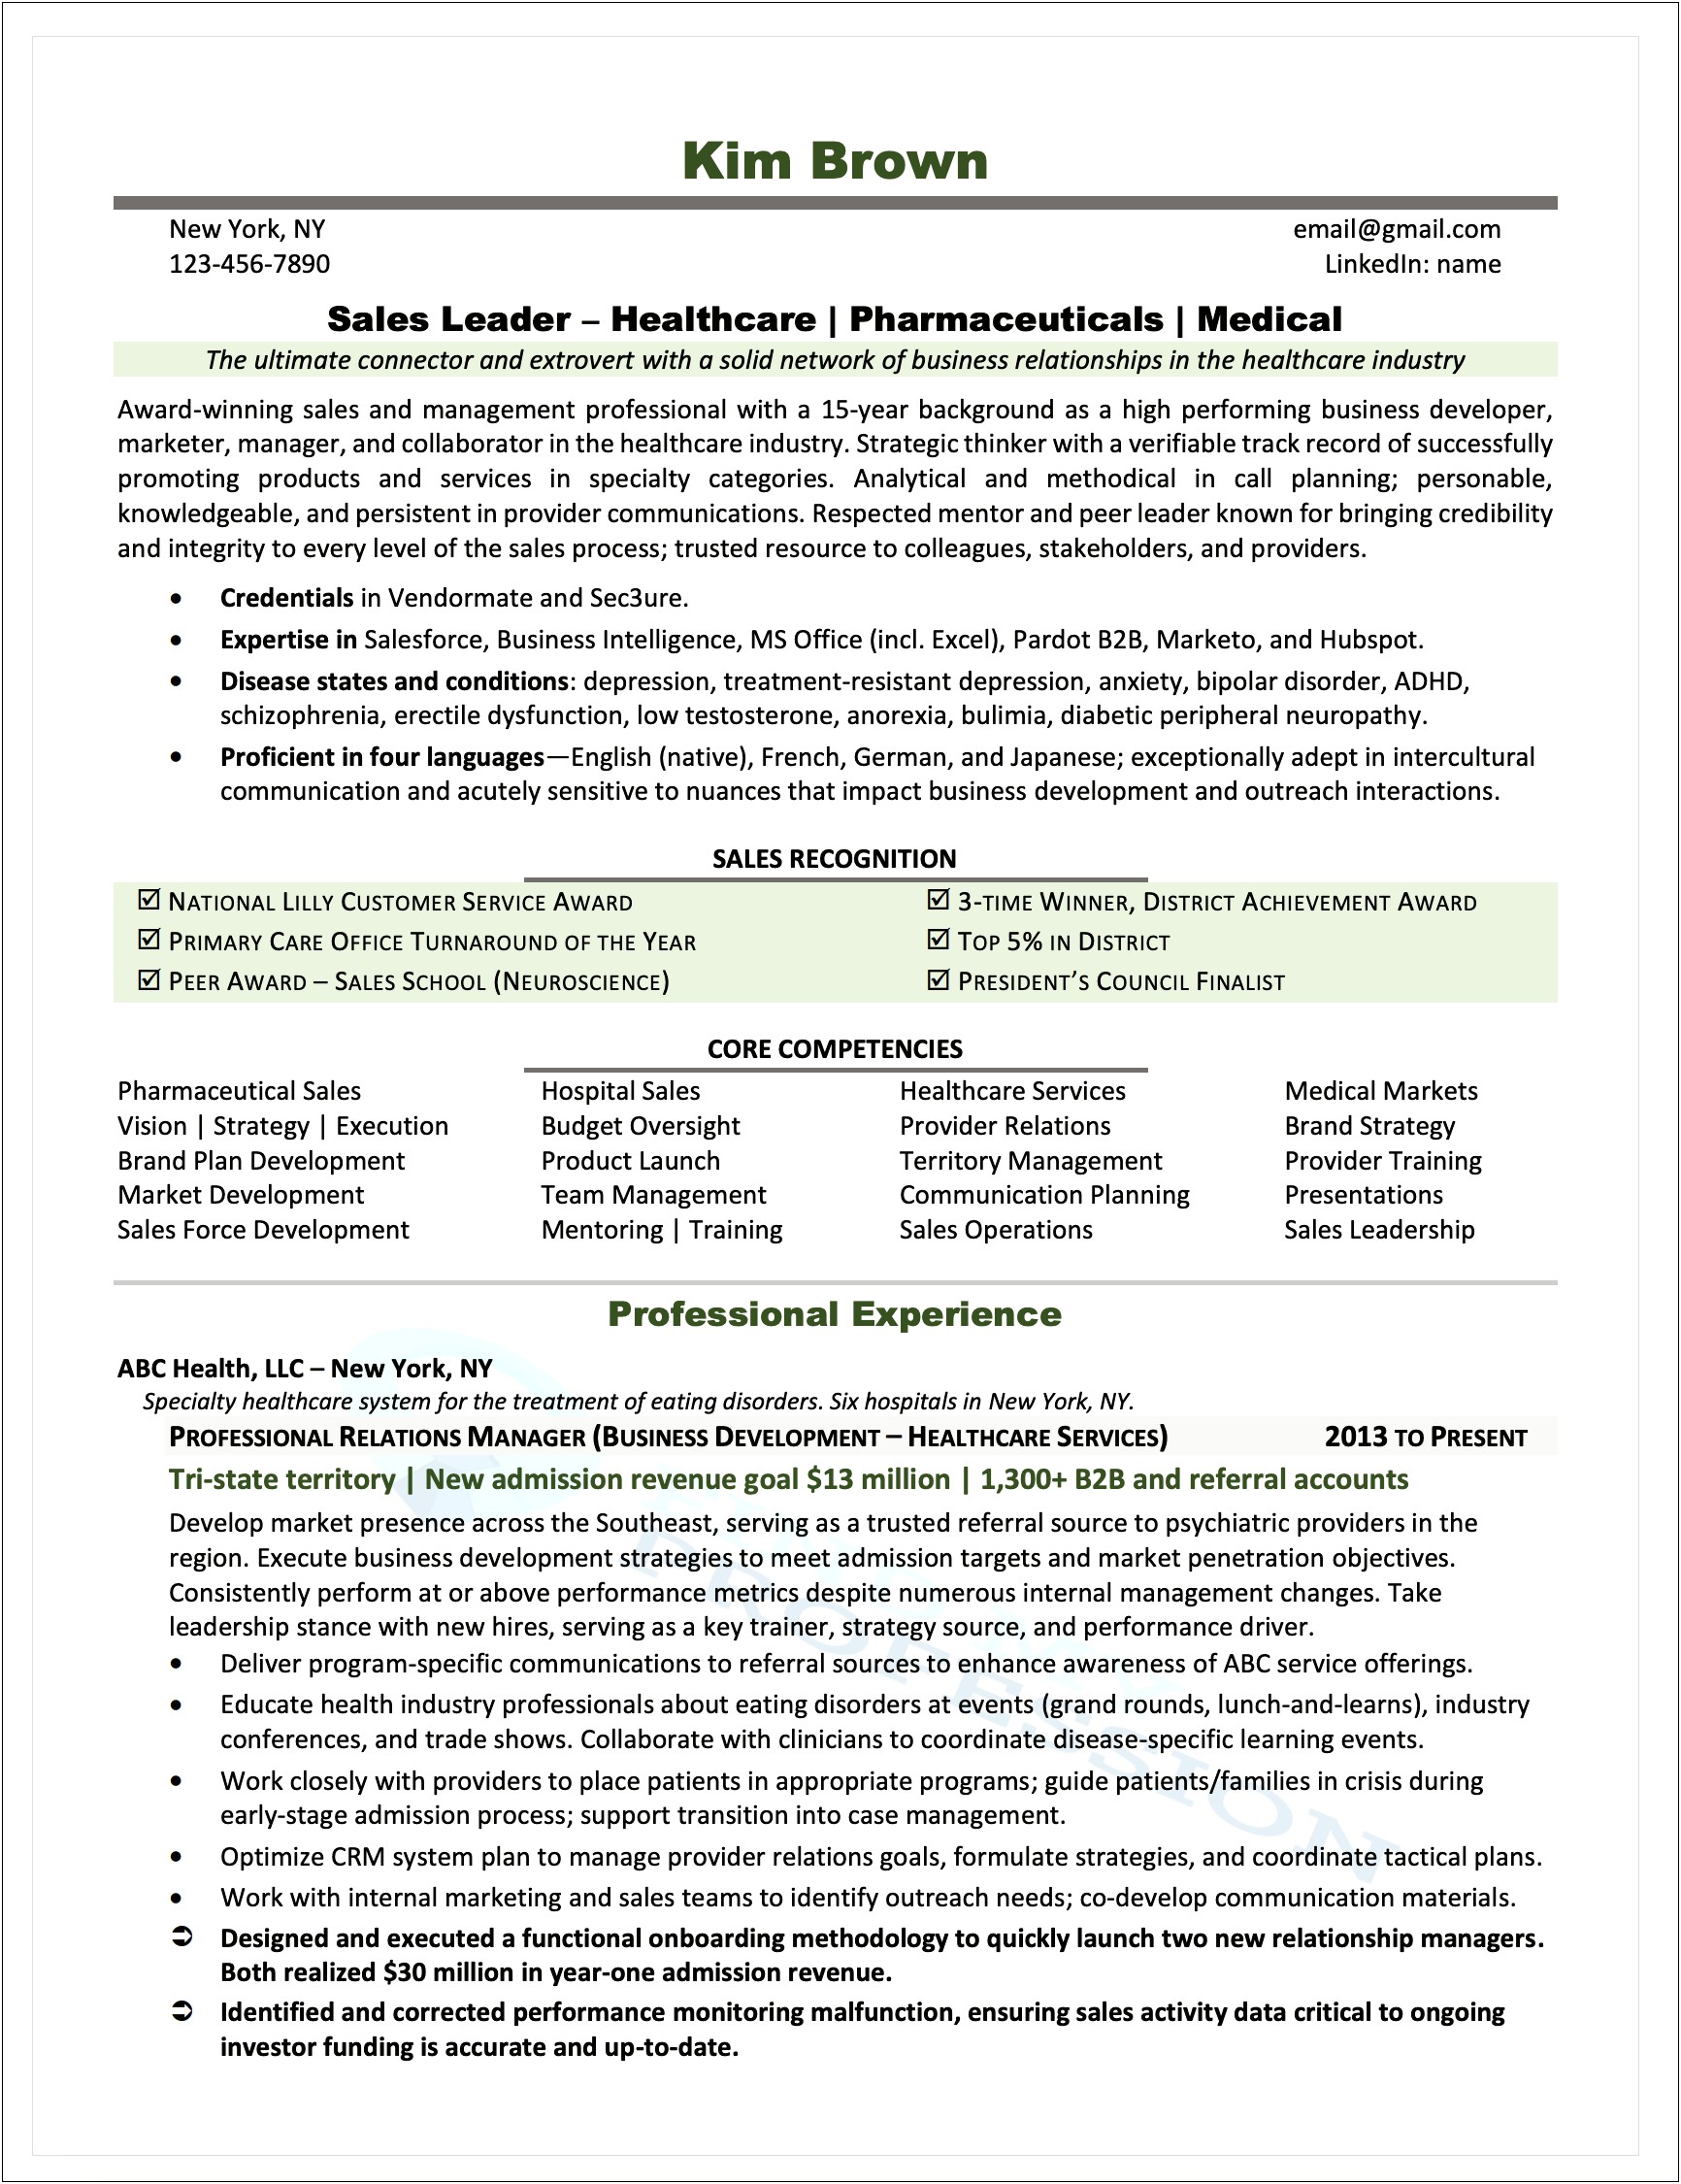 Resume For Pharmaceutical Industry Job